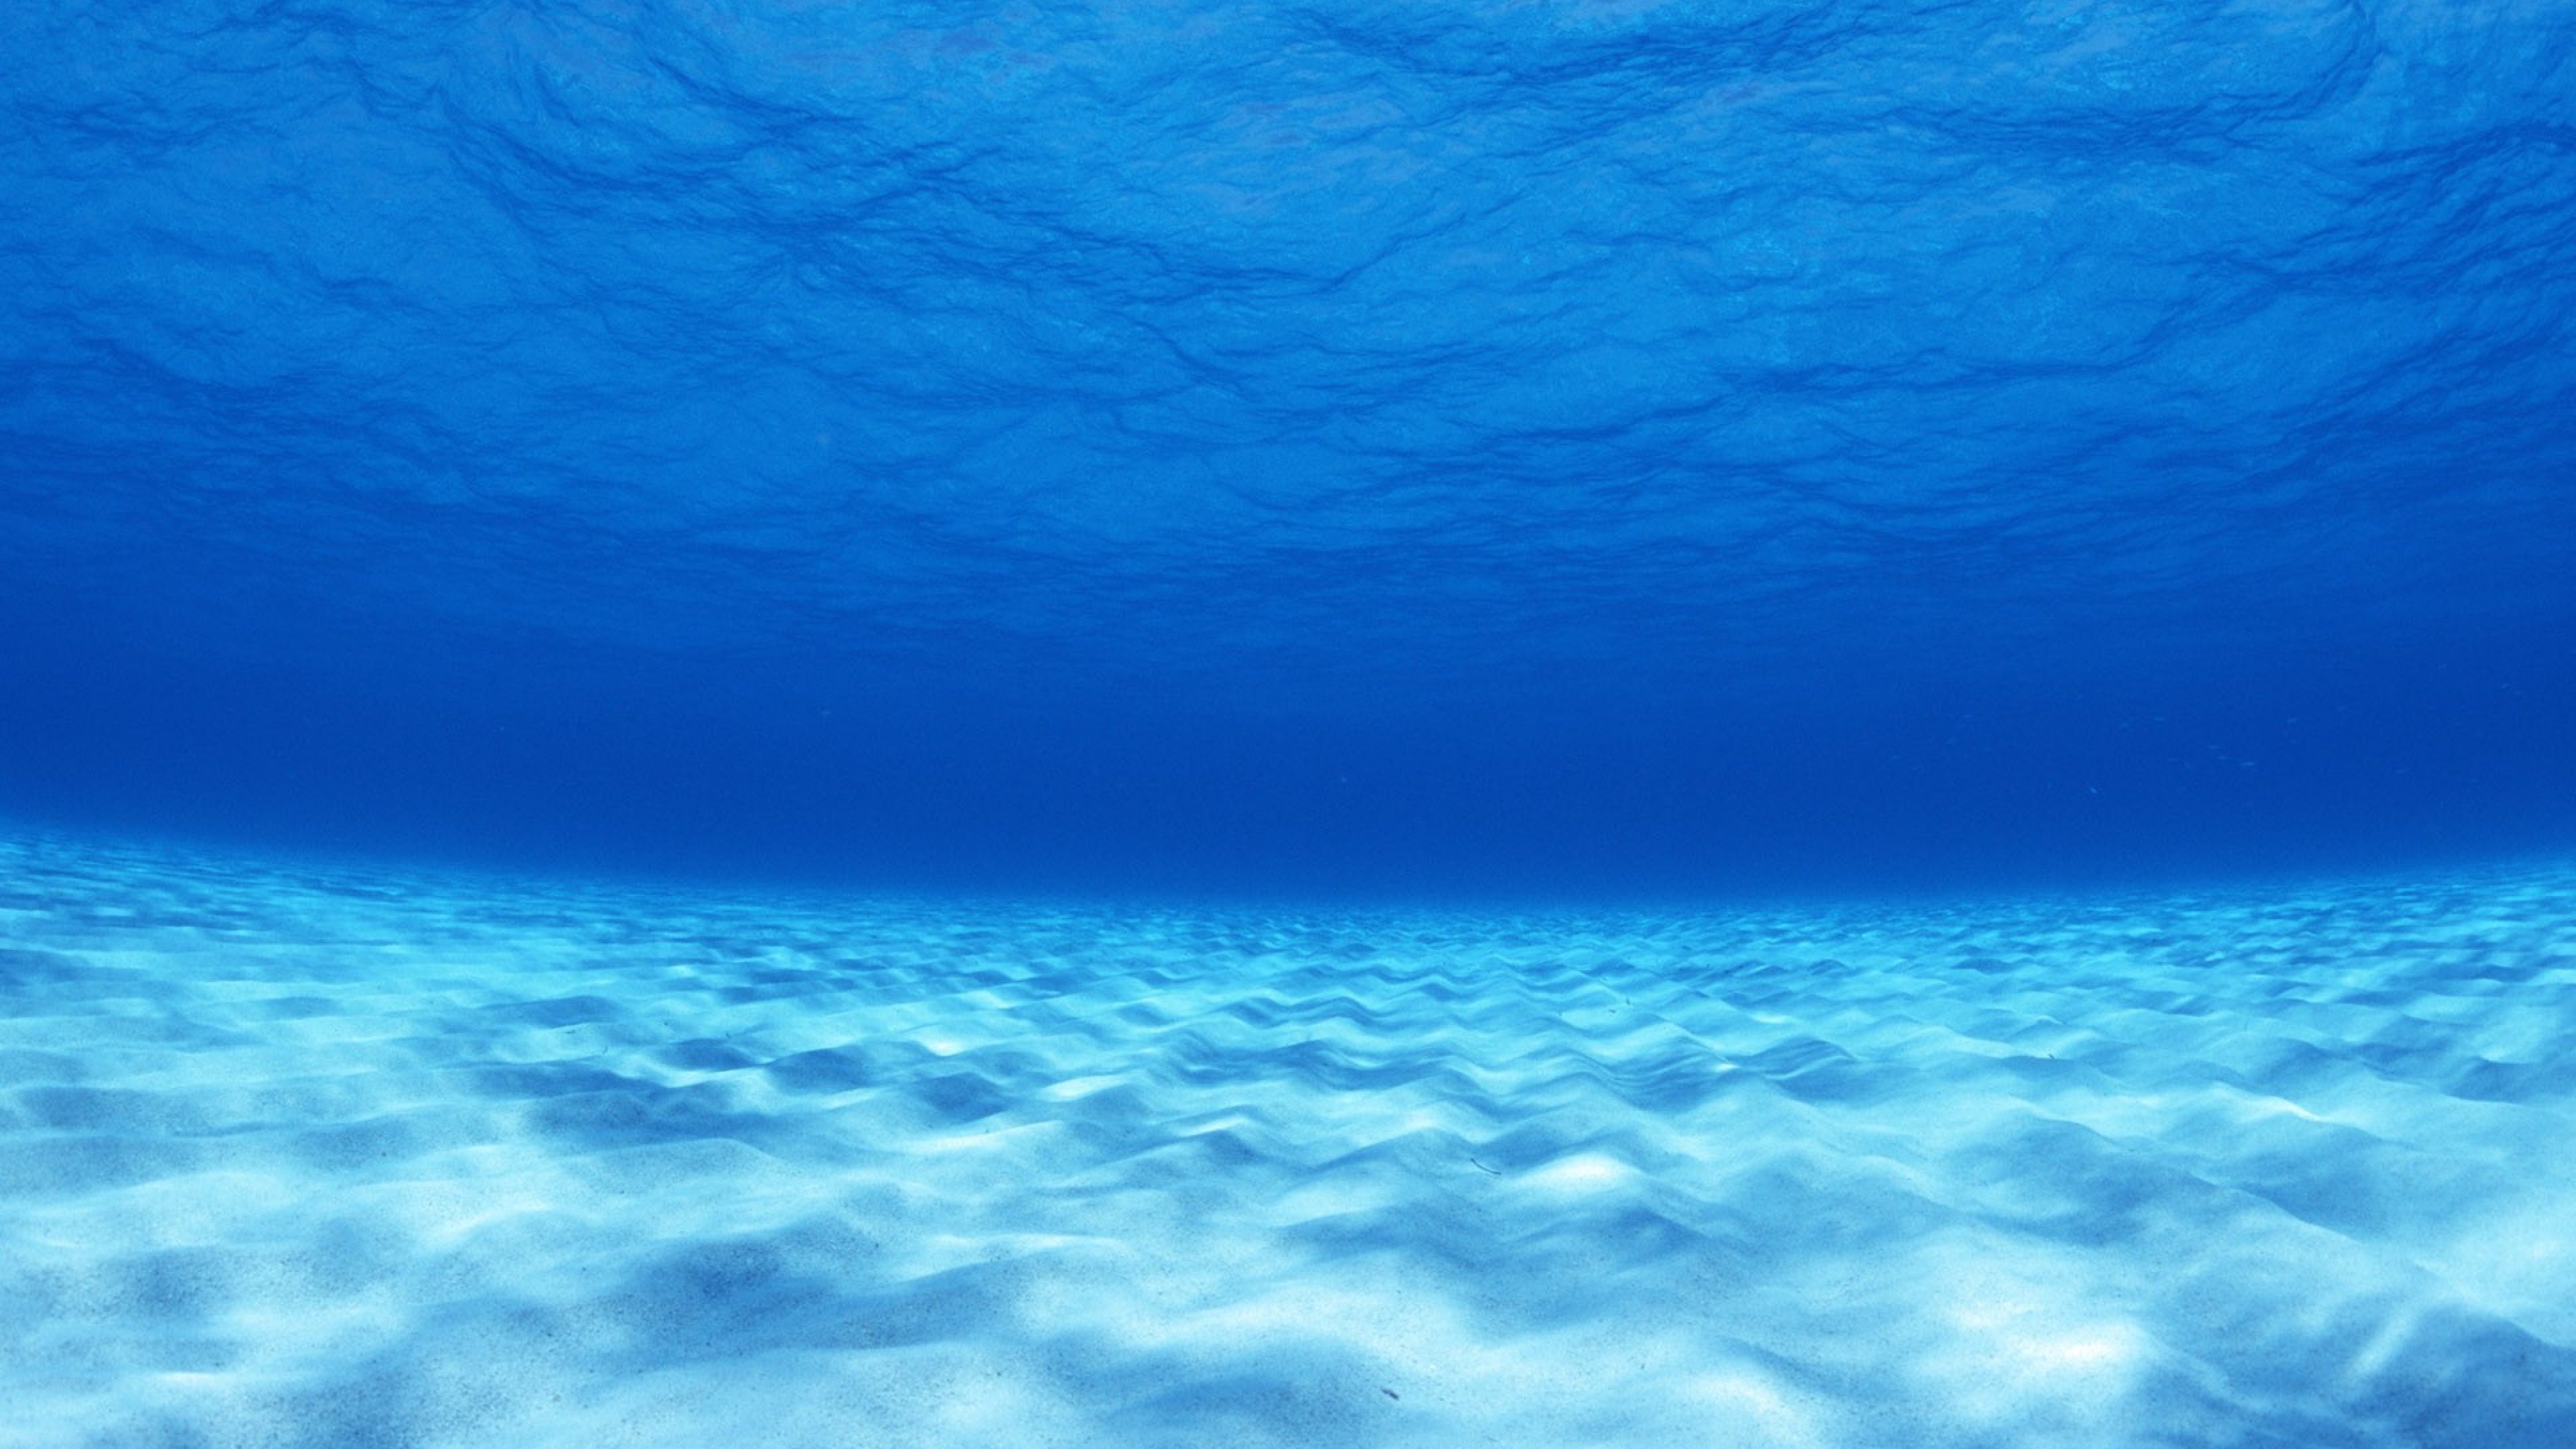  Under water Azure Light Bottom Wallpaper Background 4K Ultra HD